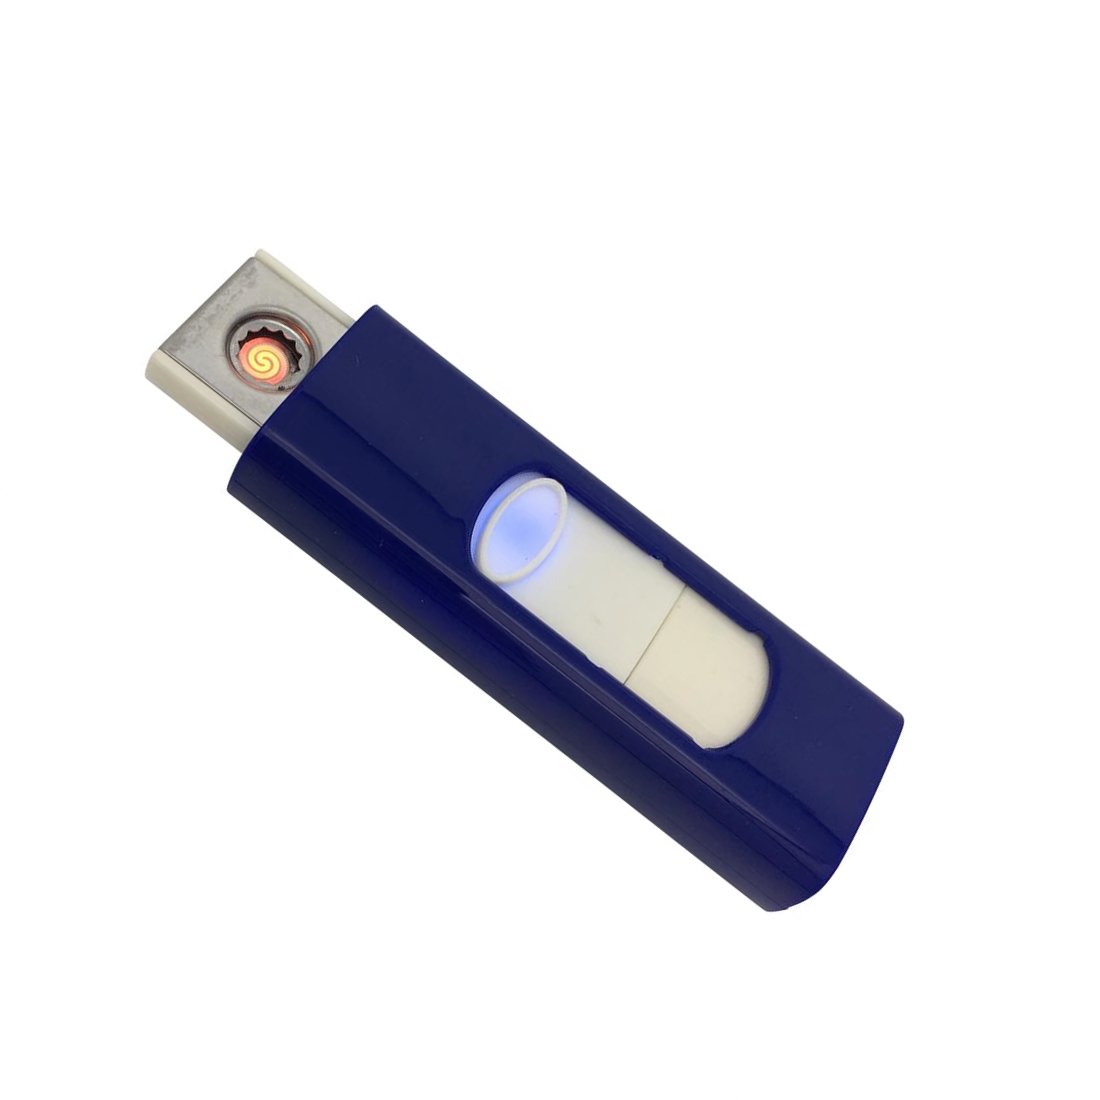 Feuerzeug mit USB Stick aufladbar, blau - Elektronisches Akku USB Glühspiralen Feuerzeug windgeschützt